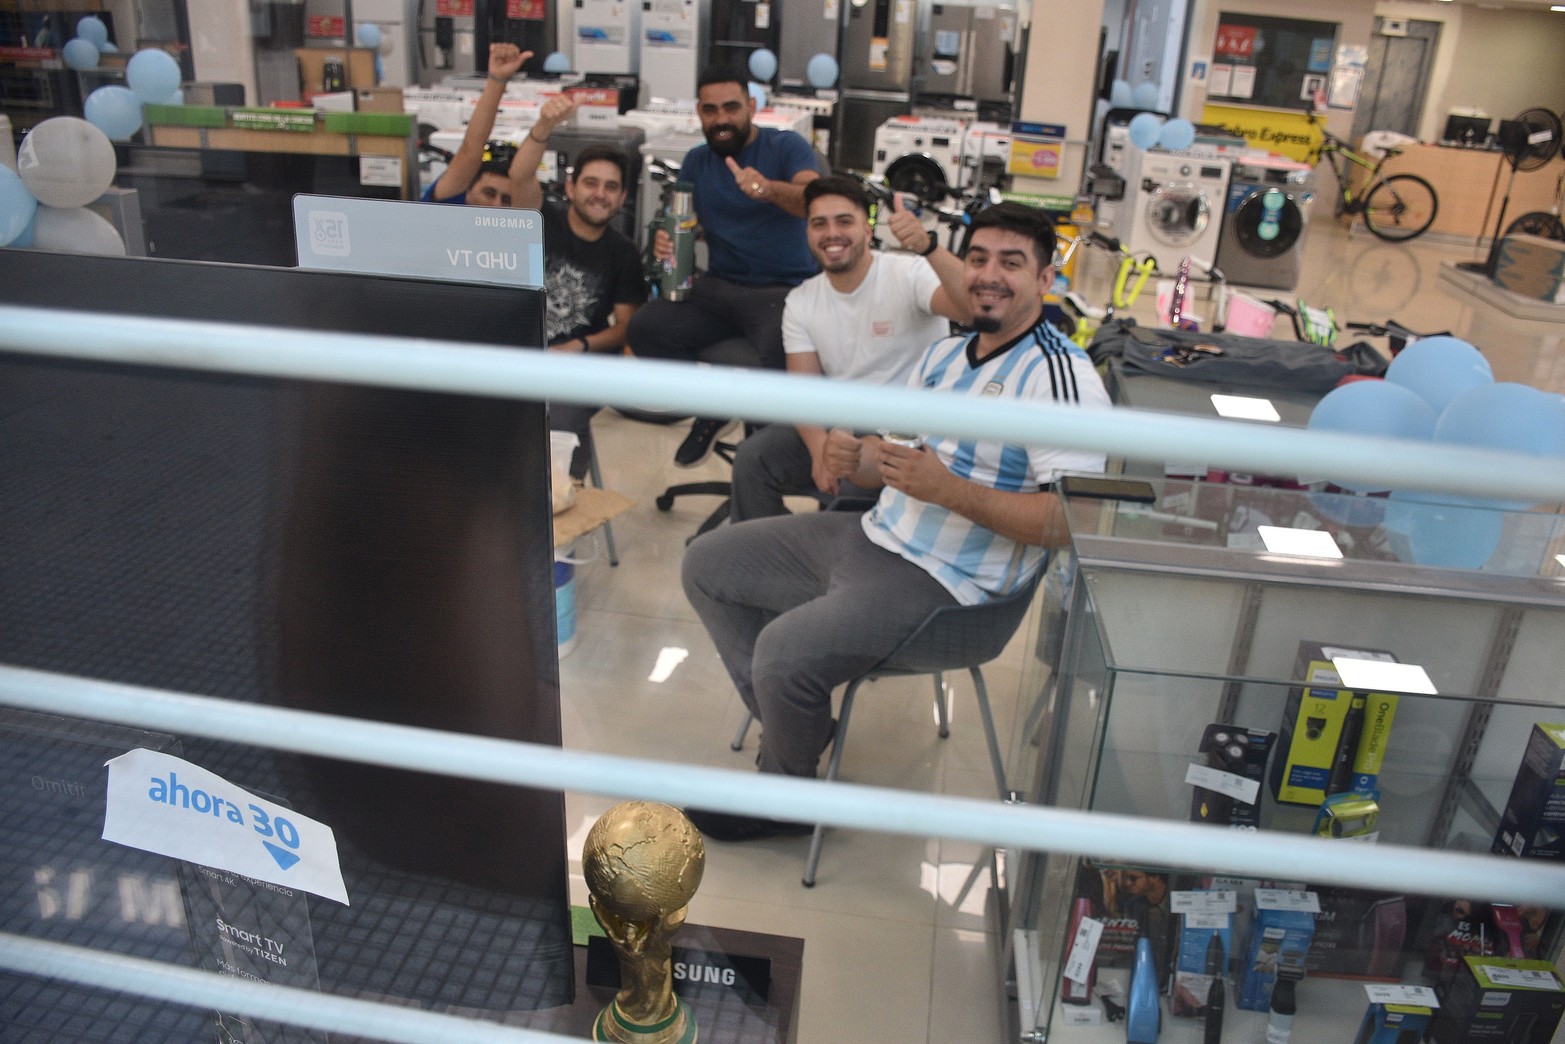 Desde temprano los empleados de un local comercial reunidos frente a la pantalla. Argentina cayó ante Arabia Saudita por 2 a 1 en el debut. Foto Flavio Raina